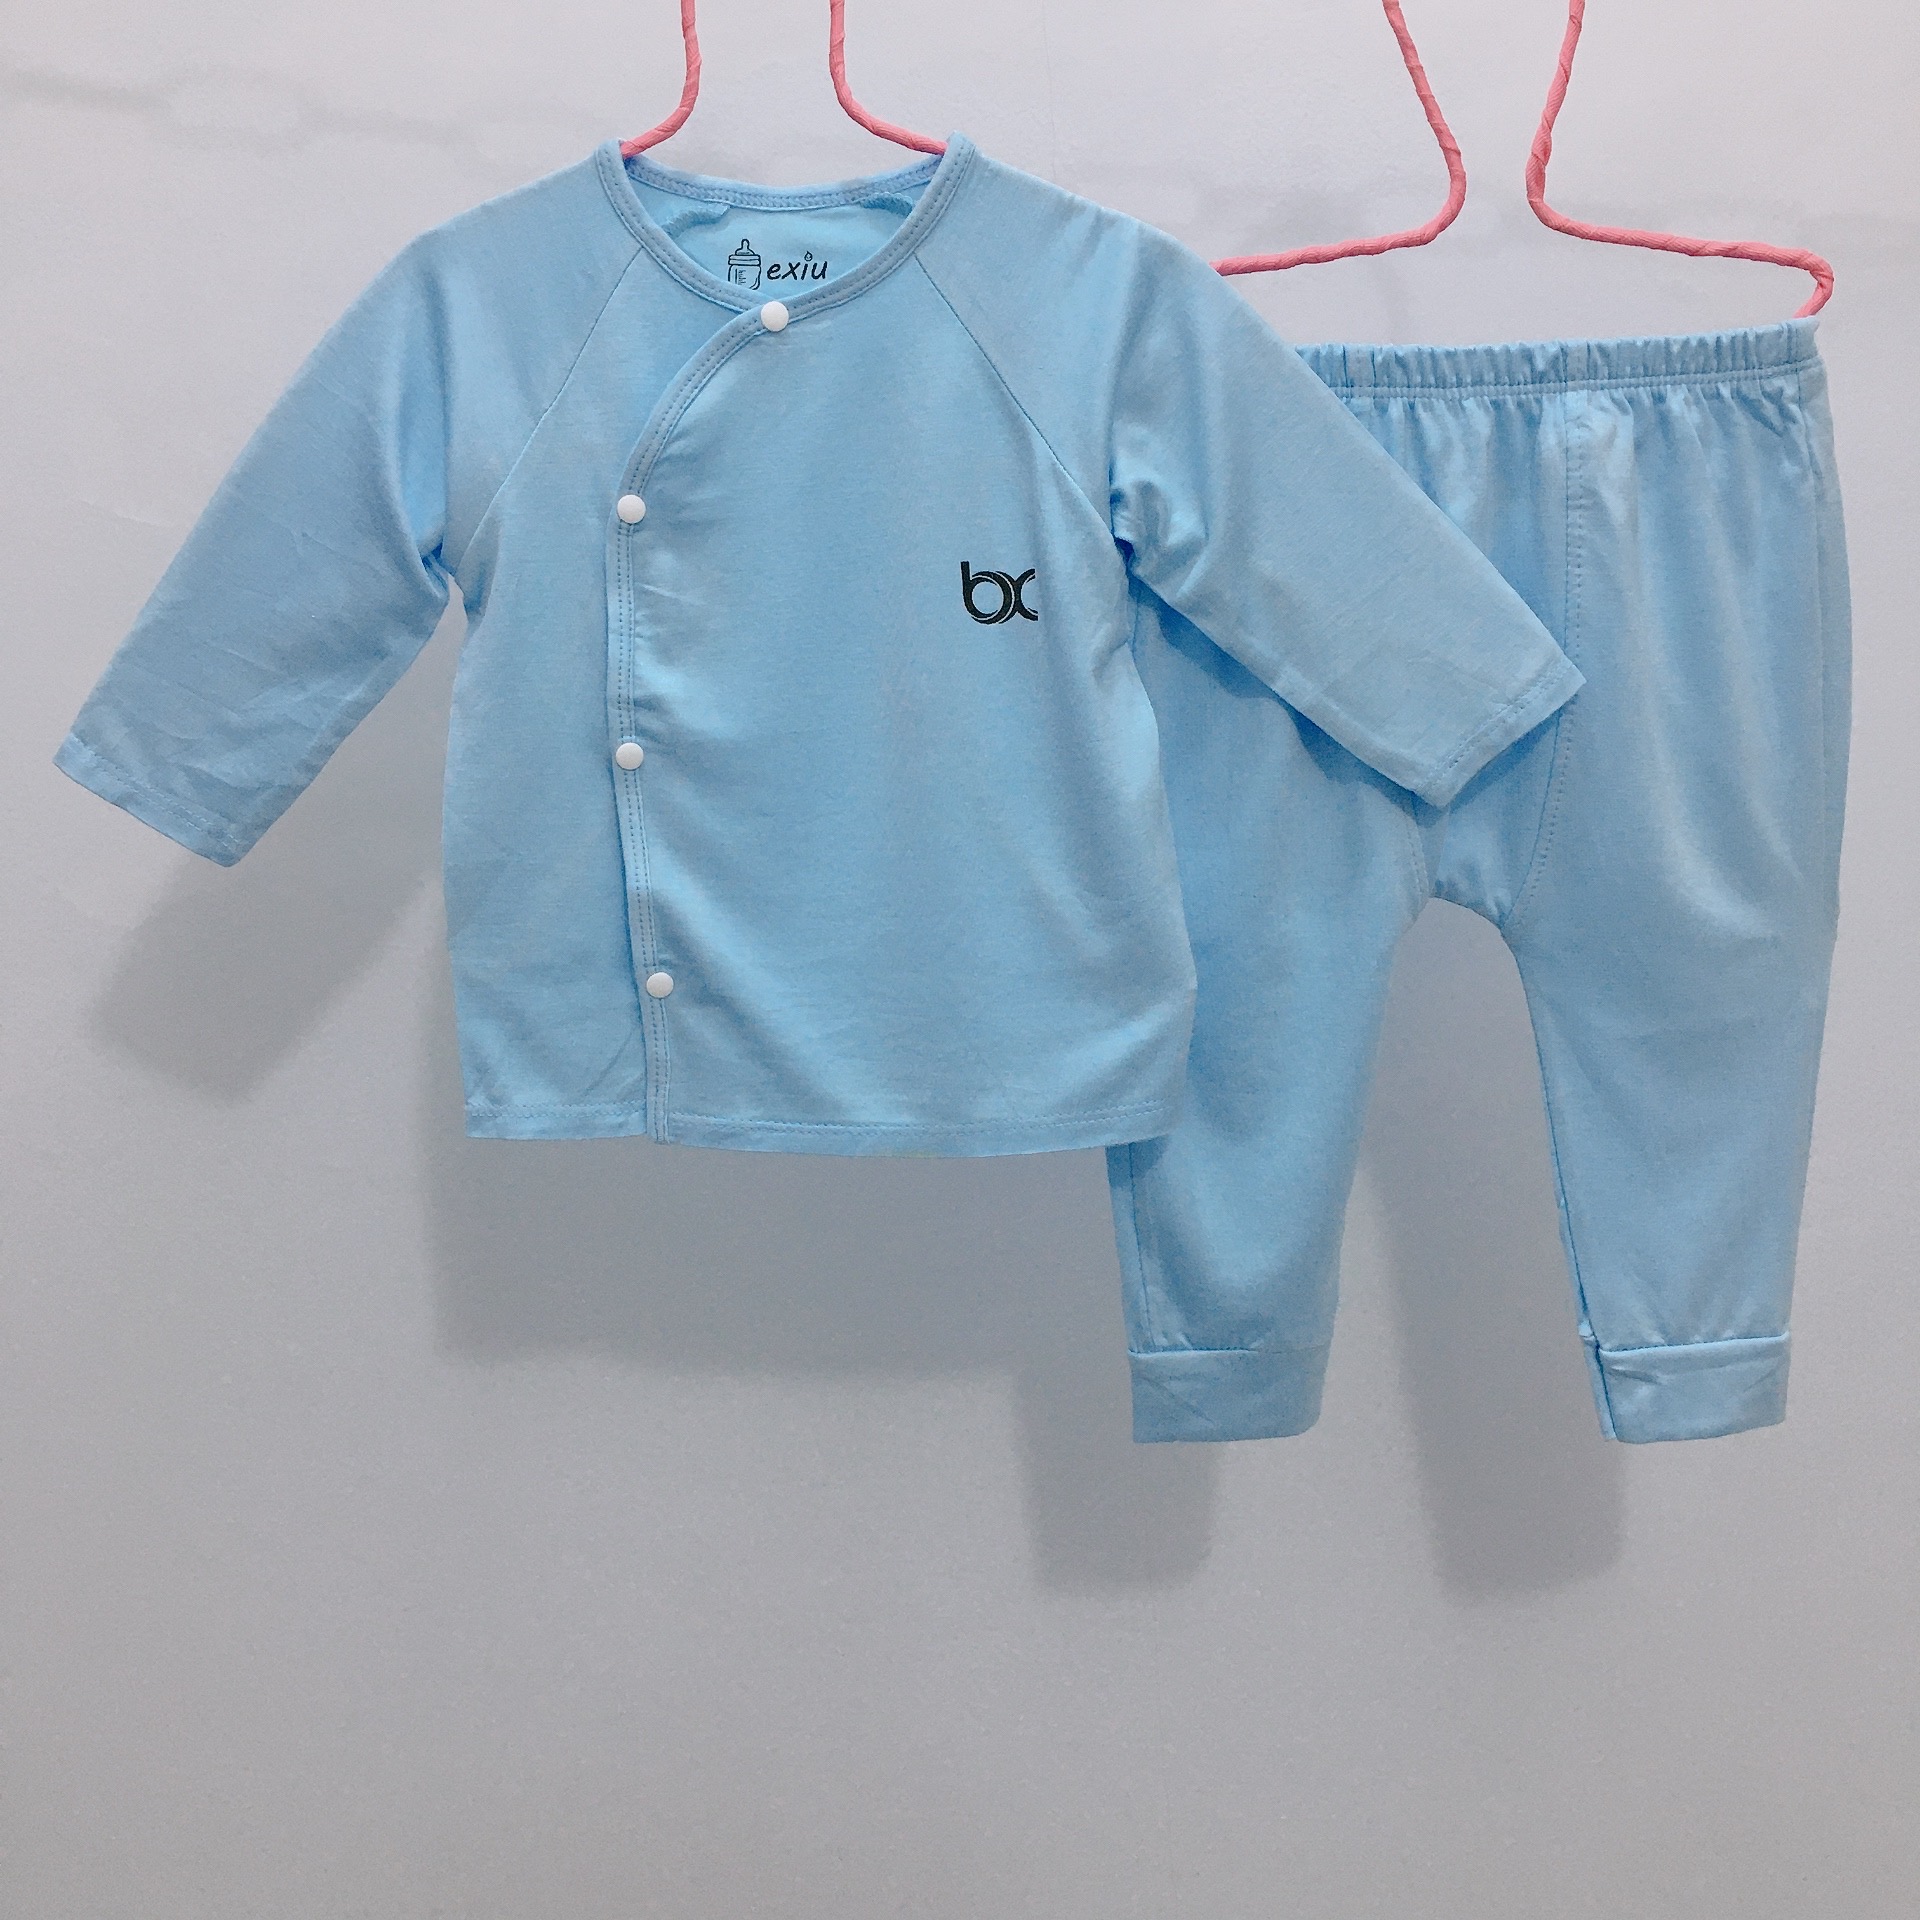 Hcmbộ dài cài lệch bexiu bx - quần áo trẻ sơ sinh thun cotton lạnh mềm - ảnh sản phẩm 6